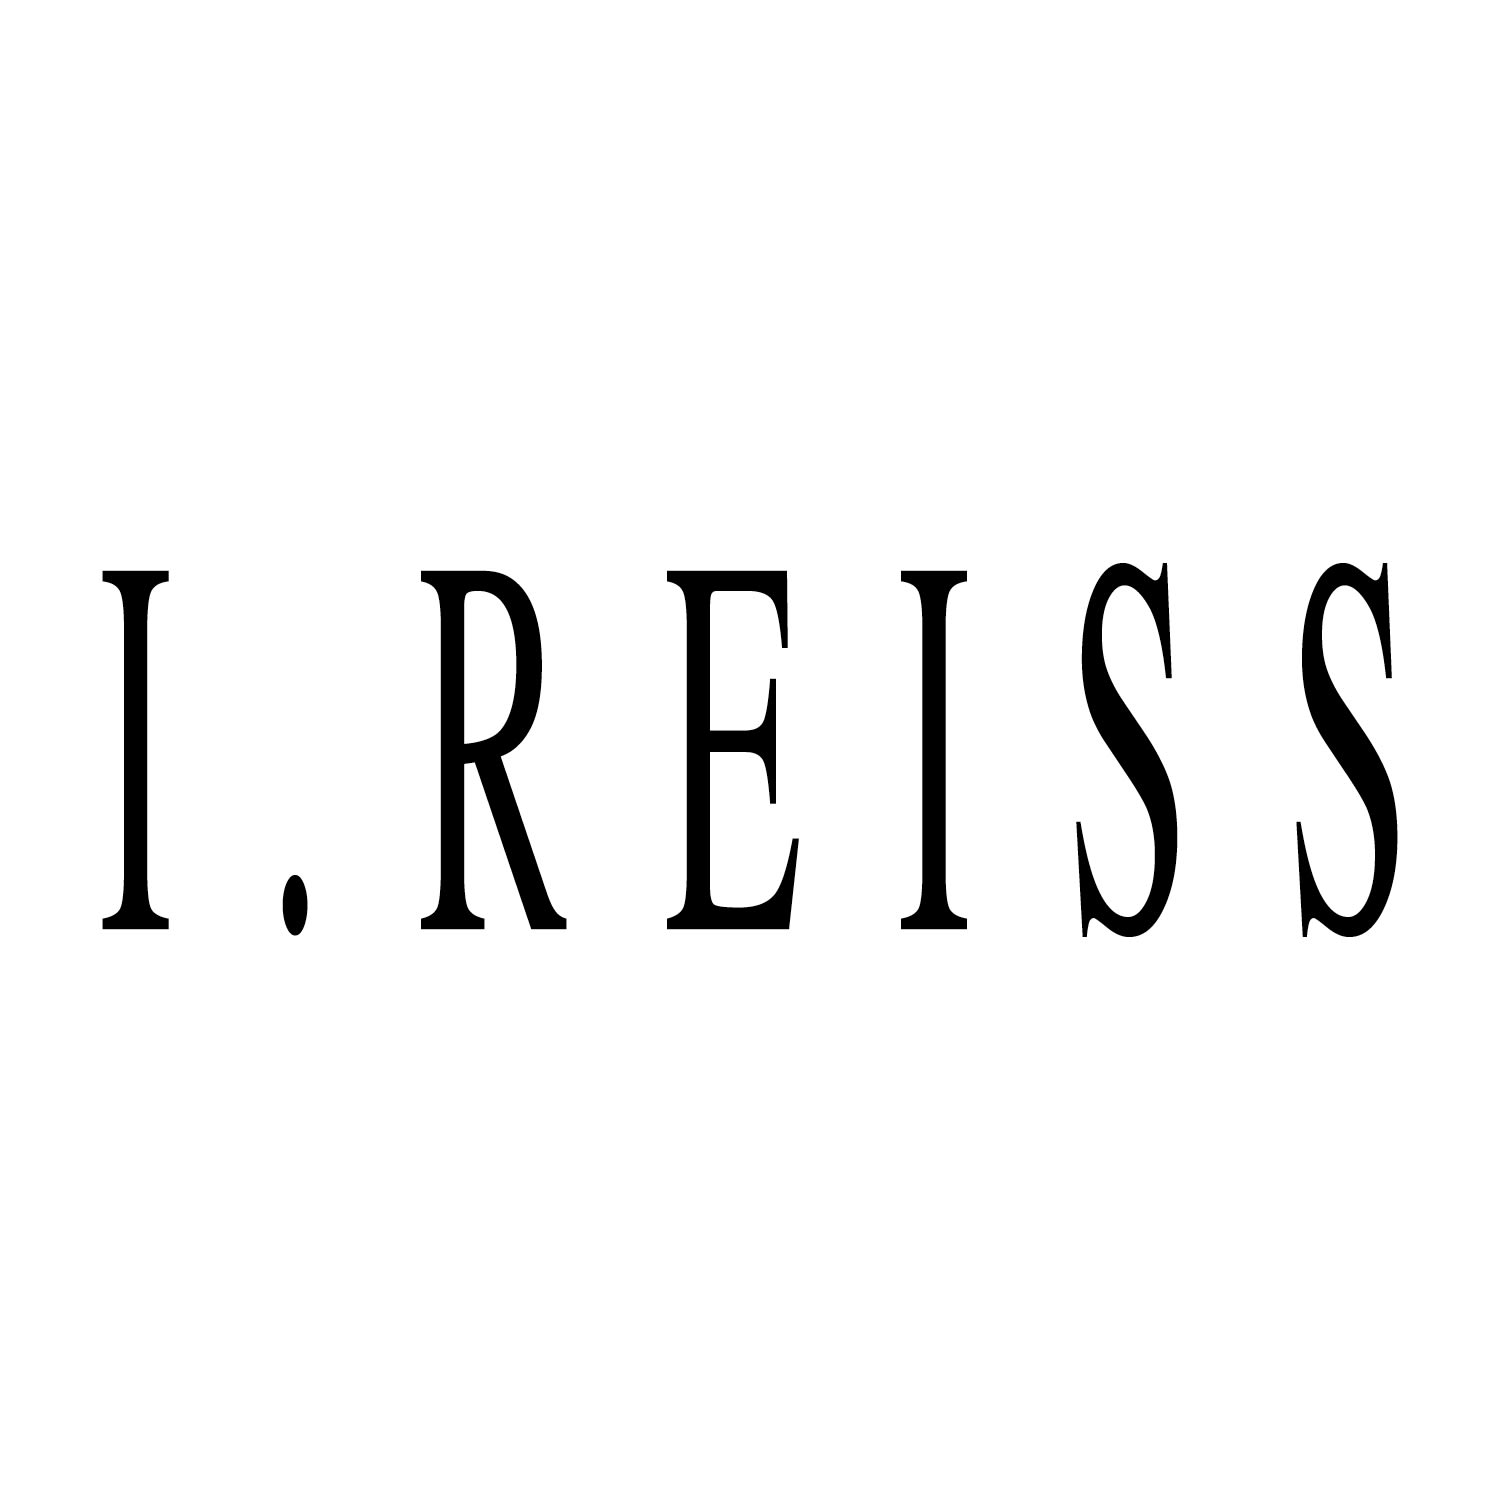 I.Reiss logo